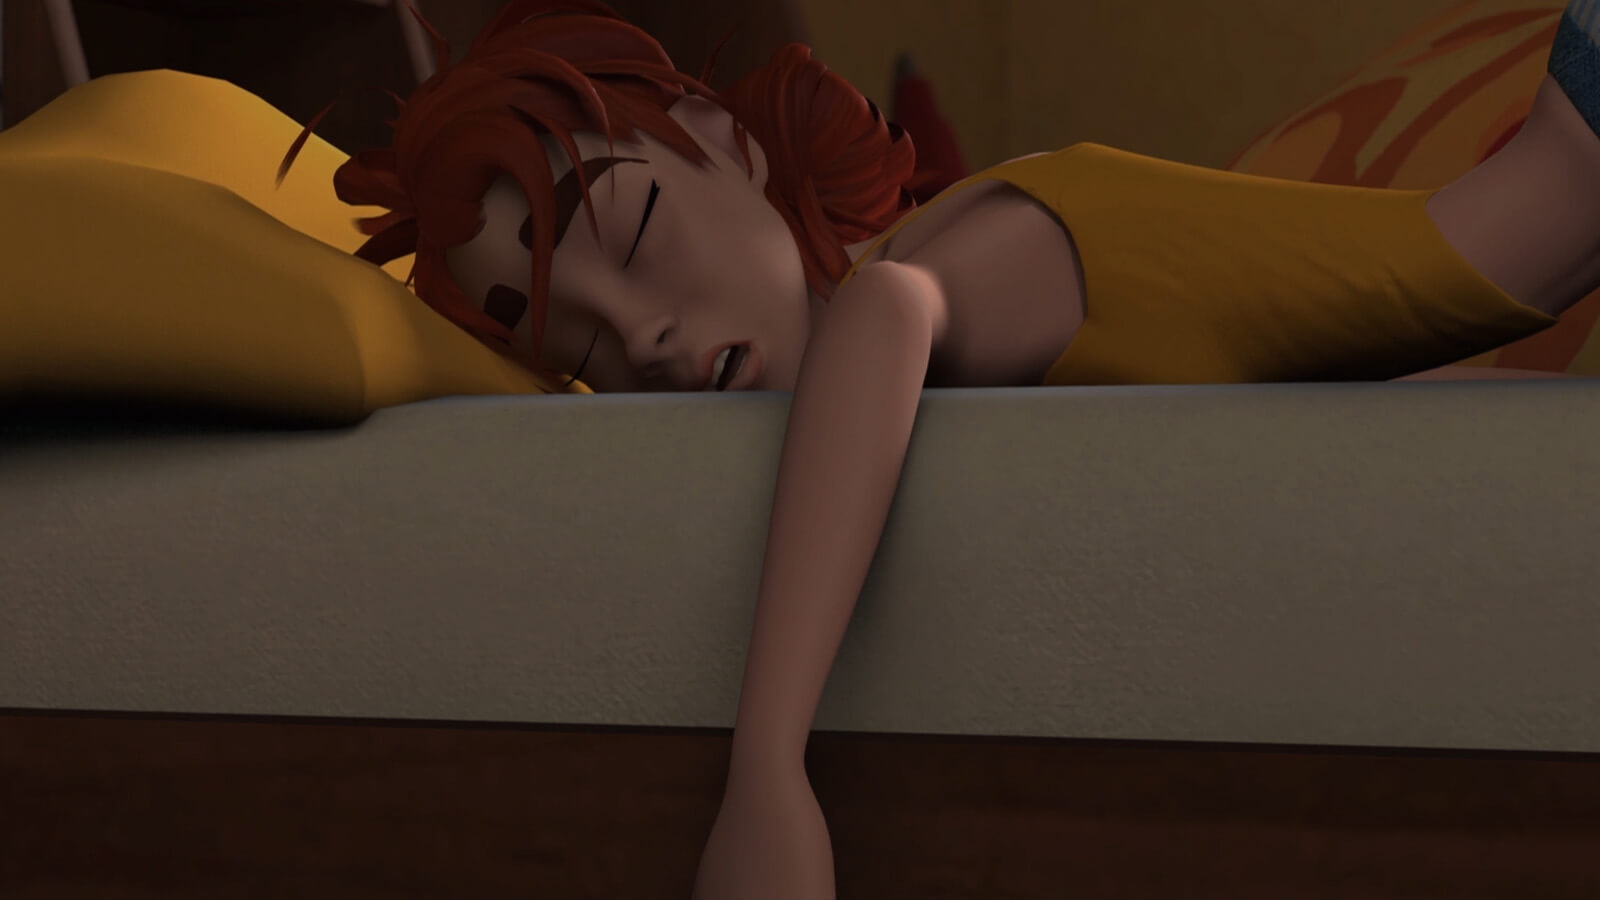 Una mujer duerme profundamente con su brazo colgando del lado de su cama